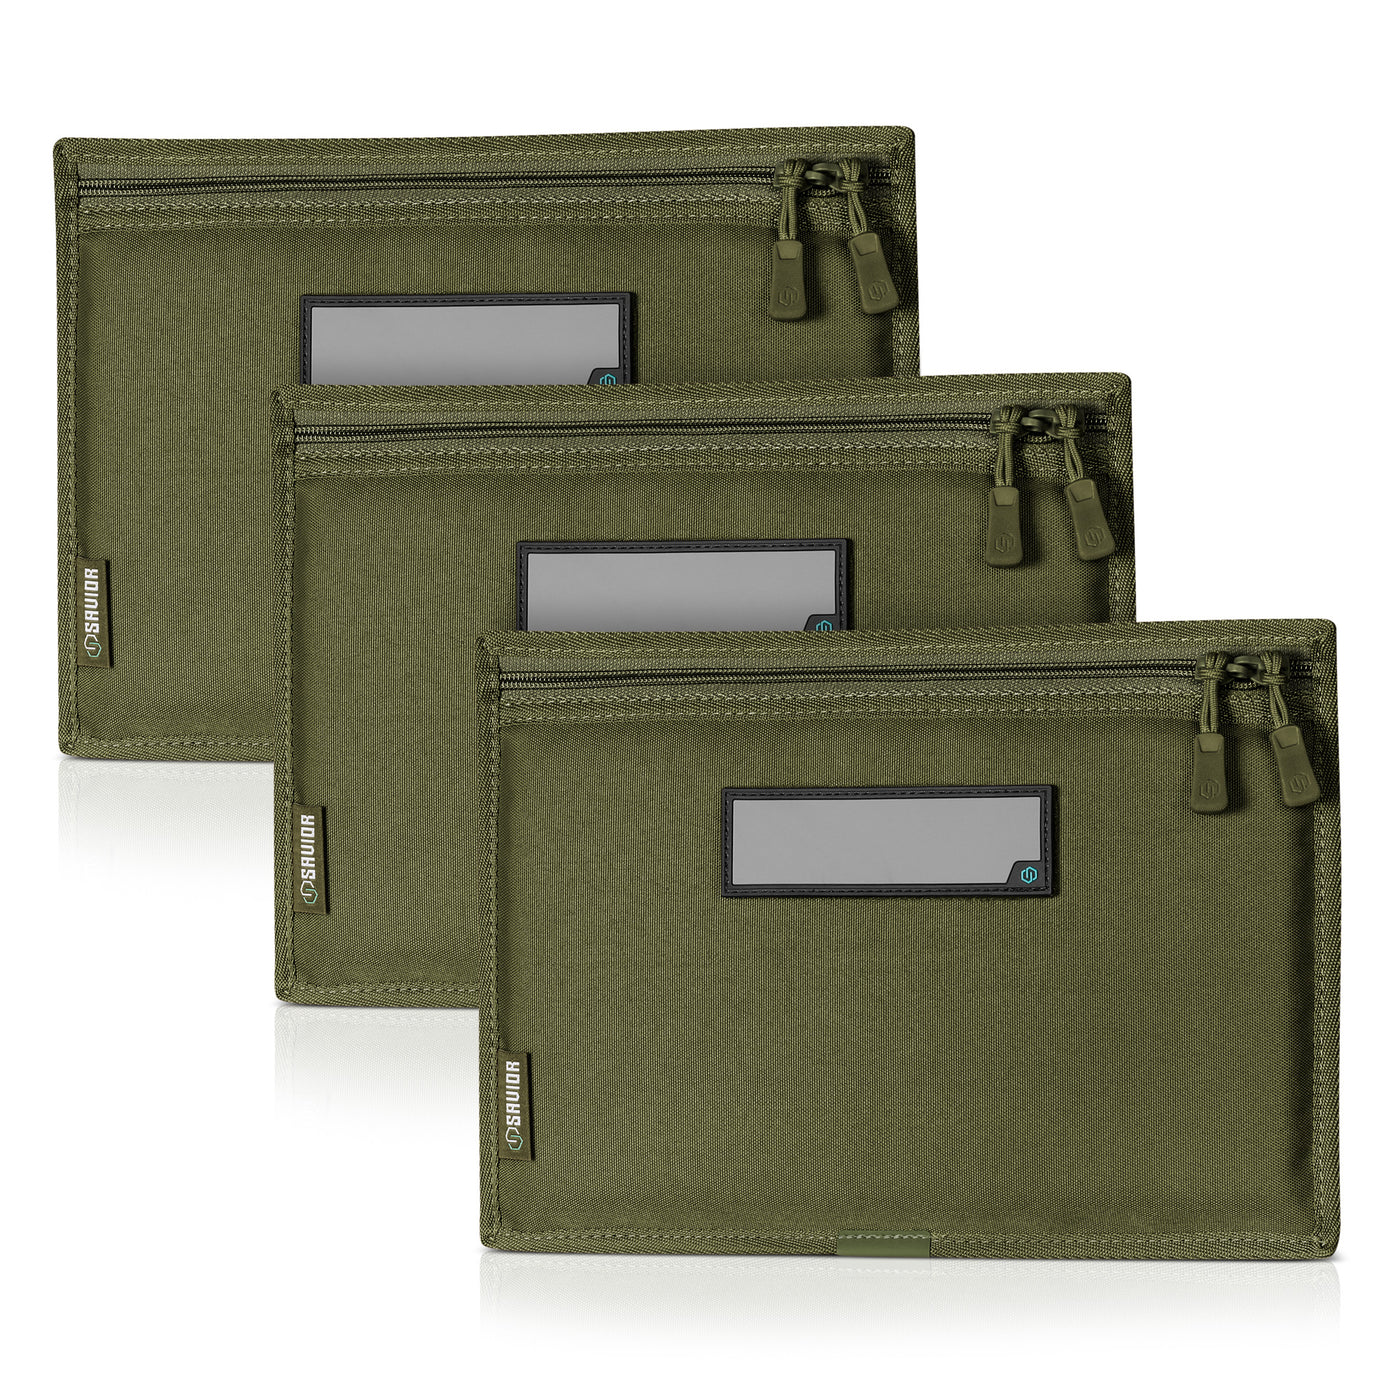 Pistol Sleeve For Specialist Range Bag - 3 Pack - Green